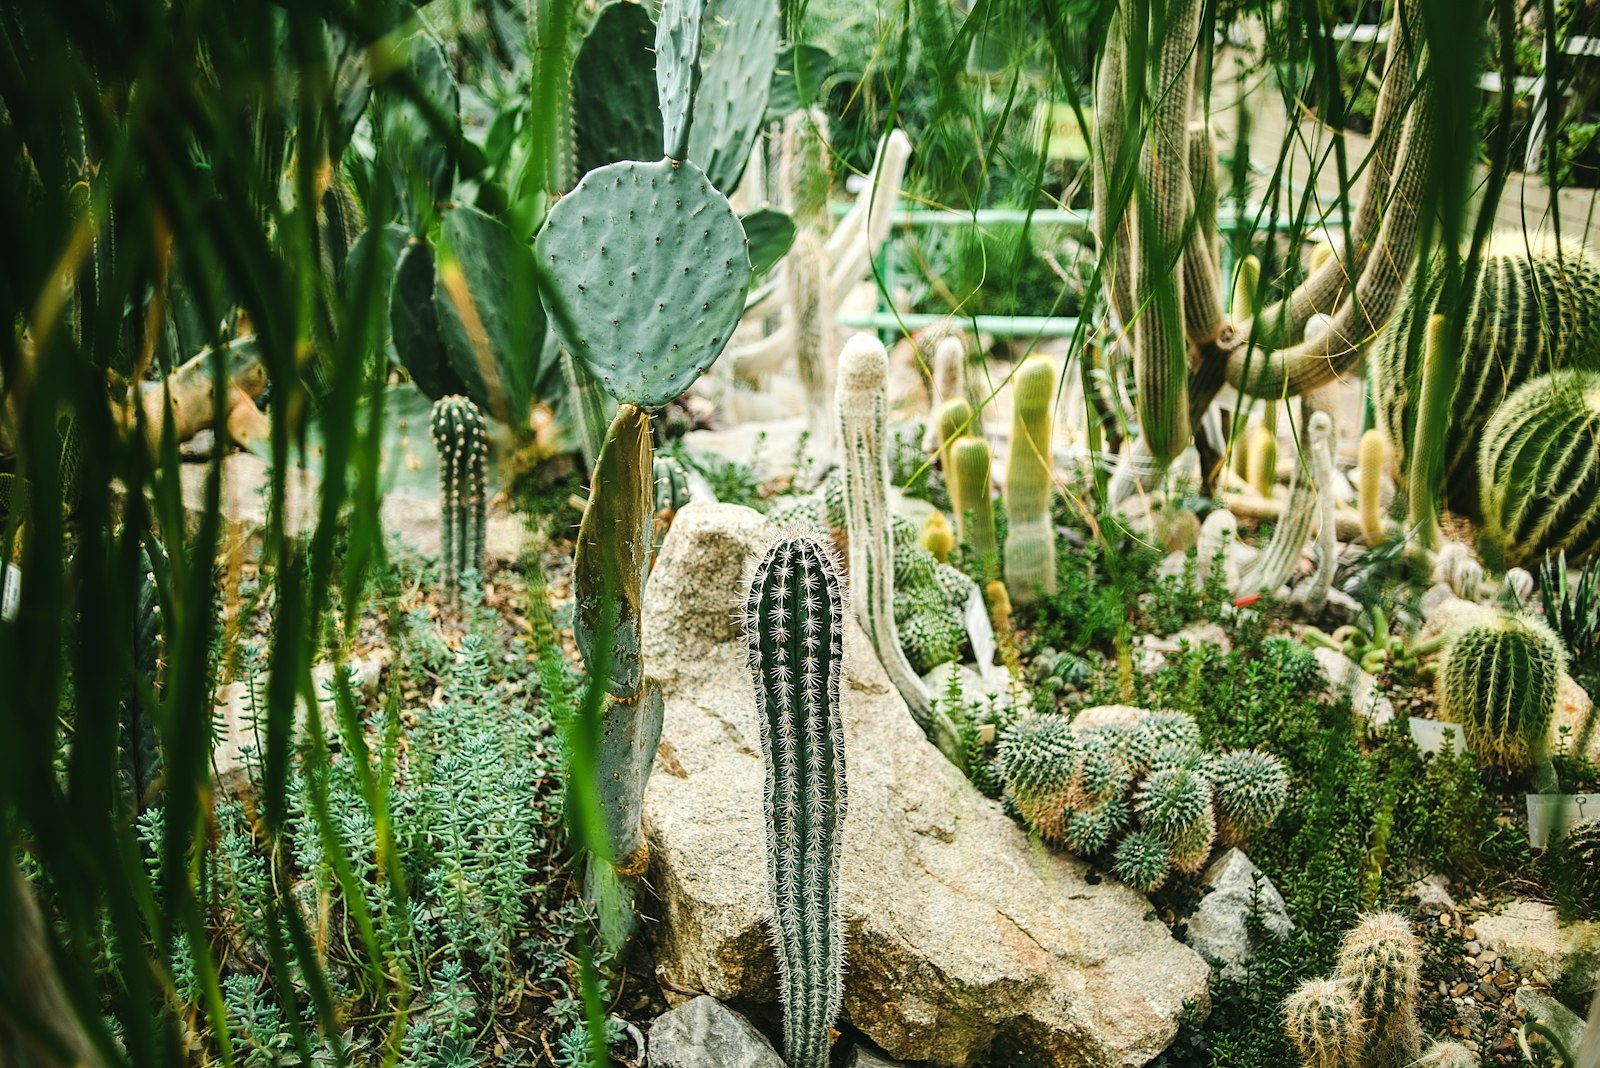 Nikon AF Nikkor 35mm F2D sample photo. Green cactus plant on photography